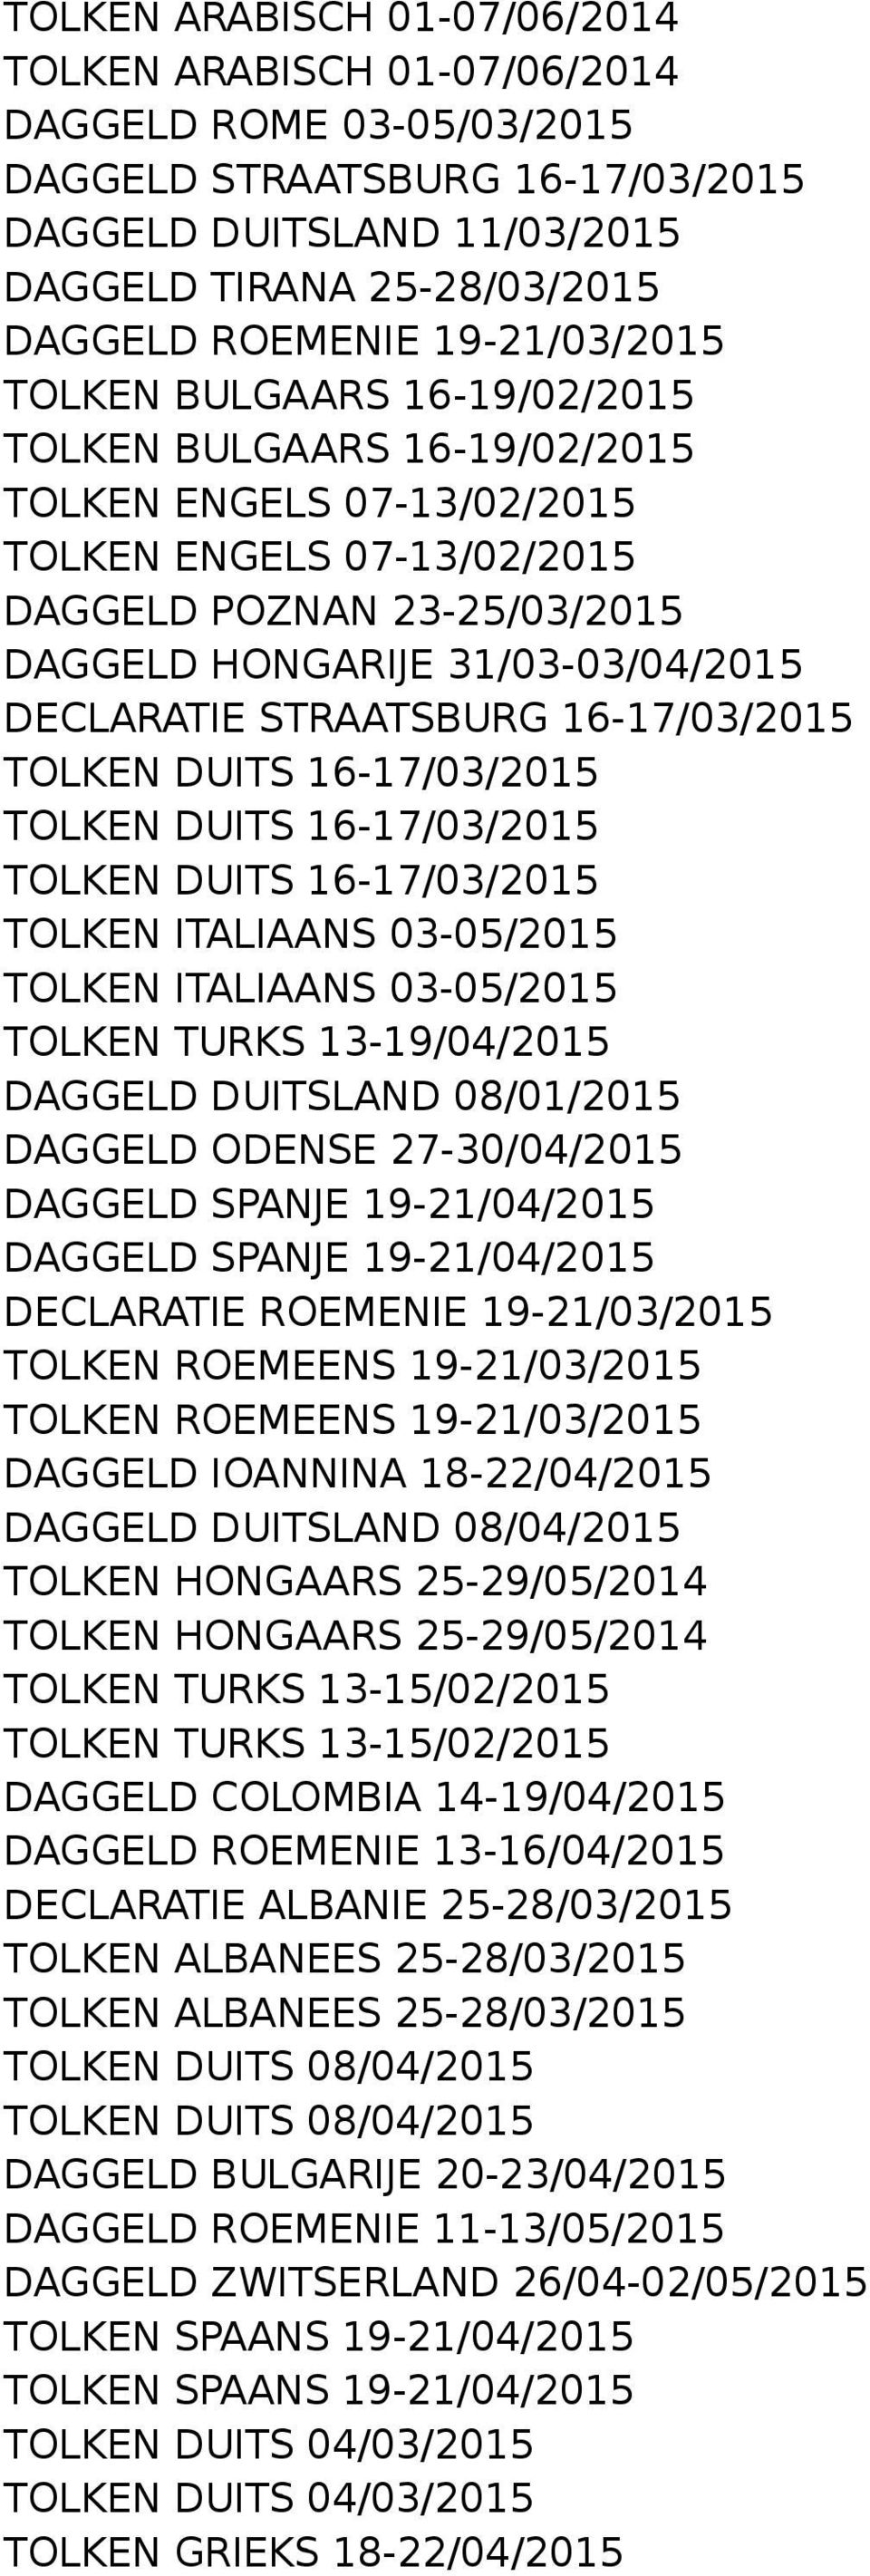 DECLARATIE STRAATSBURG 16-17/03/2015 TOLKEN DUITS 16-17/03/2015 TOLKEN DUITS 16-17/03/2015 TOLKEN DUITS 16-17/03/2015 TOLKEN ITALIAANS 03-05/2015 TOLKEN ITALIAANS 03-05/2015 TOLKEN TURKS